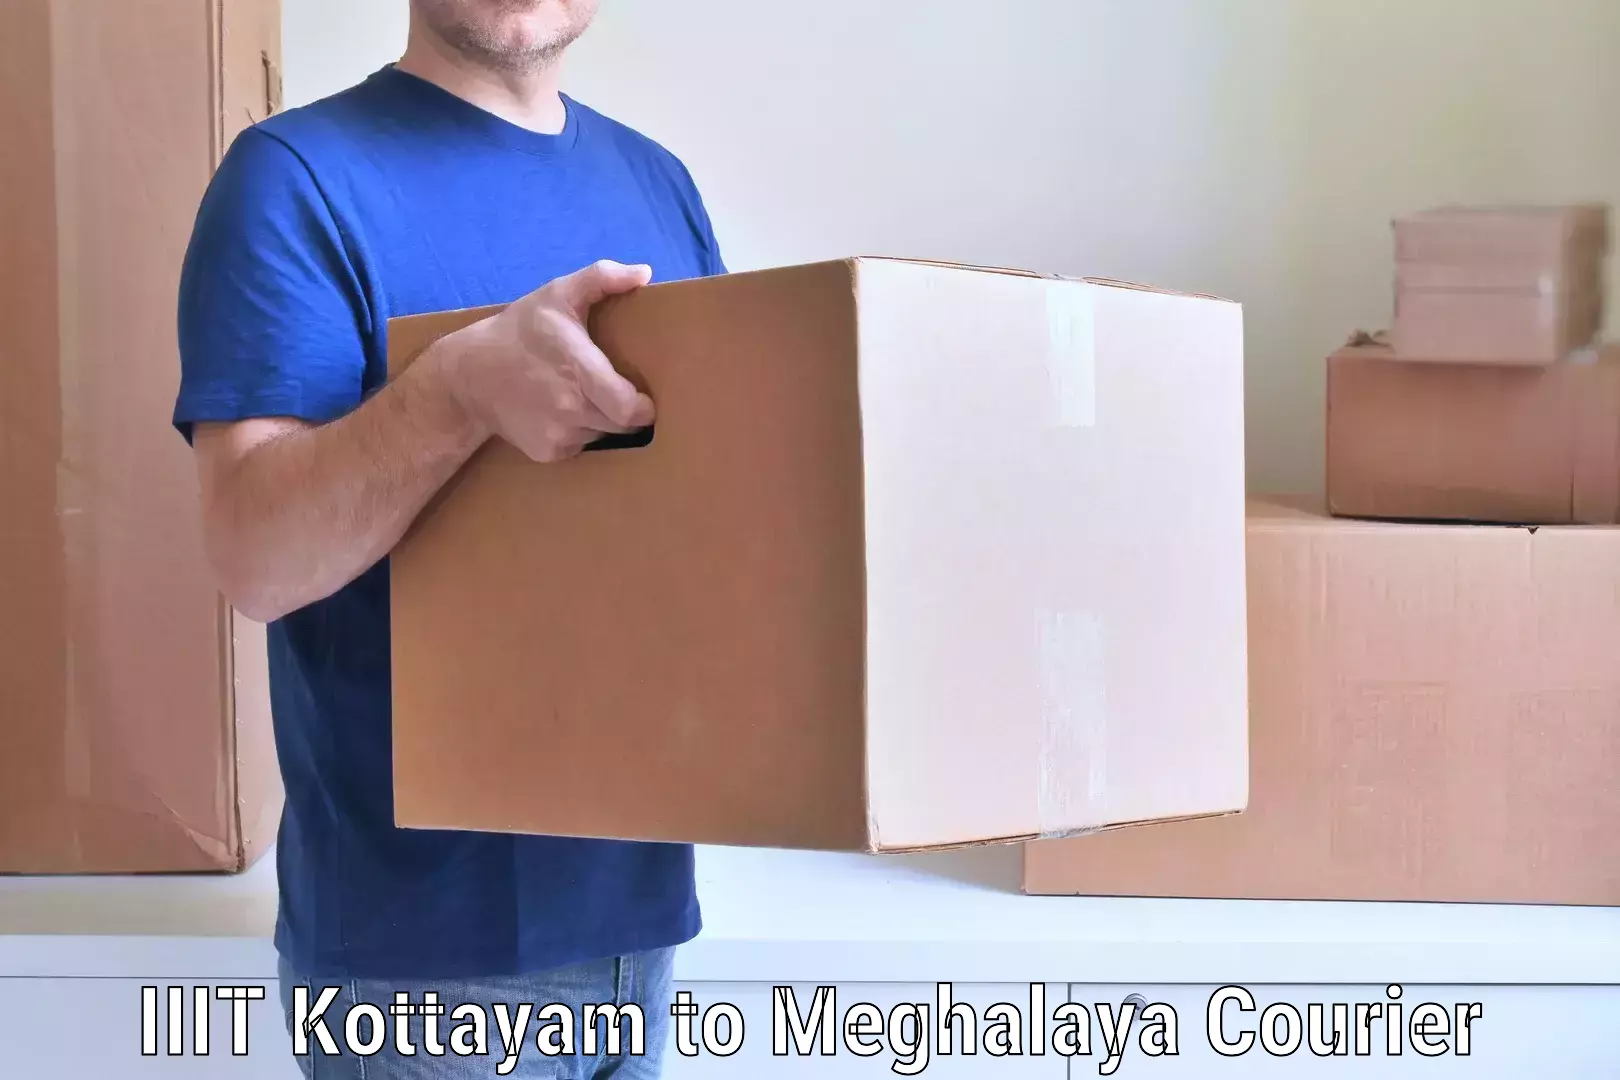 Professional movers IIIT Kottayam to Phulbari